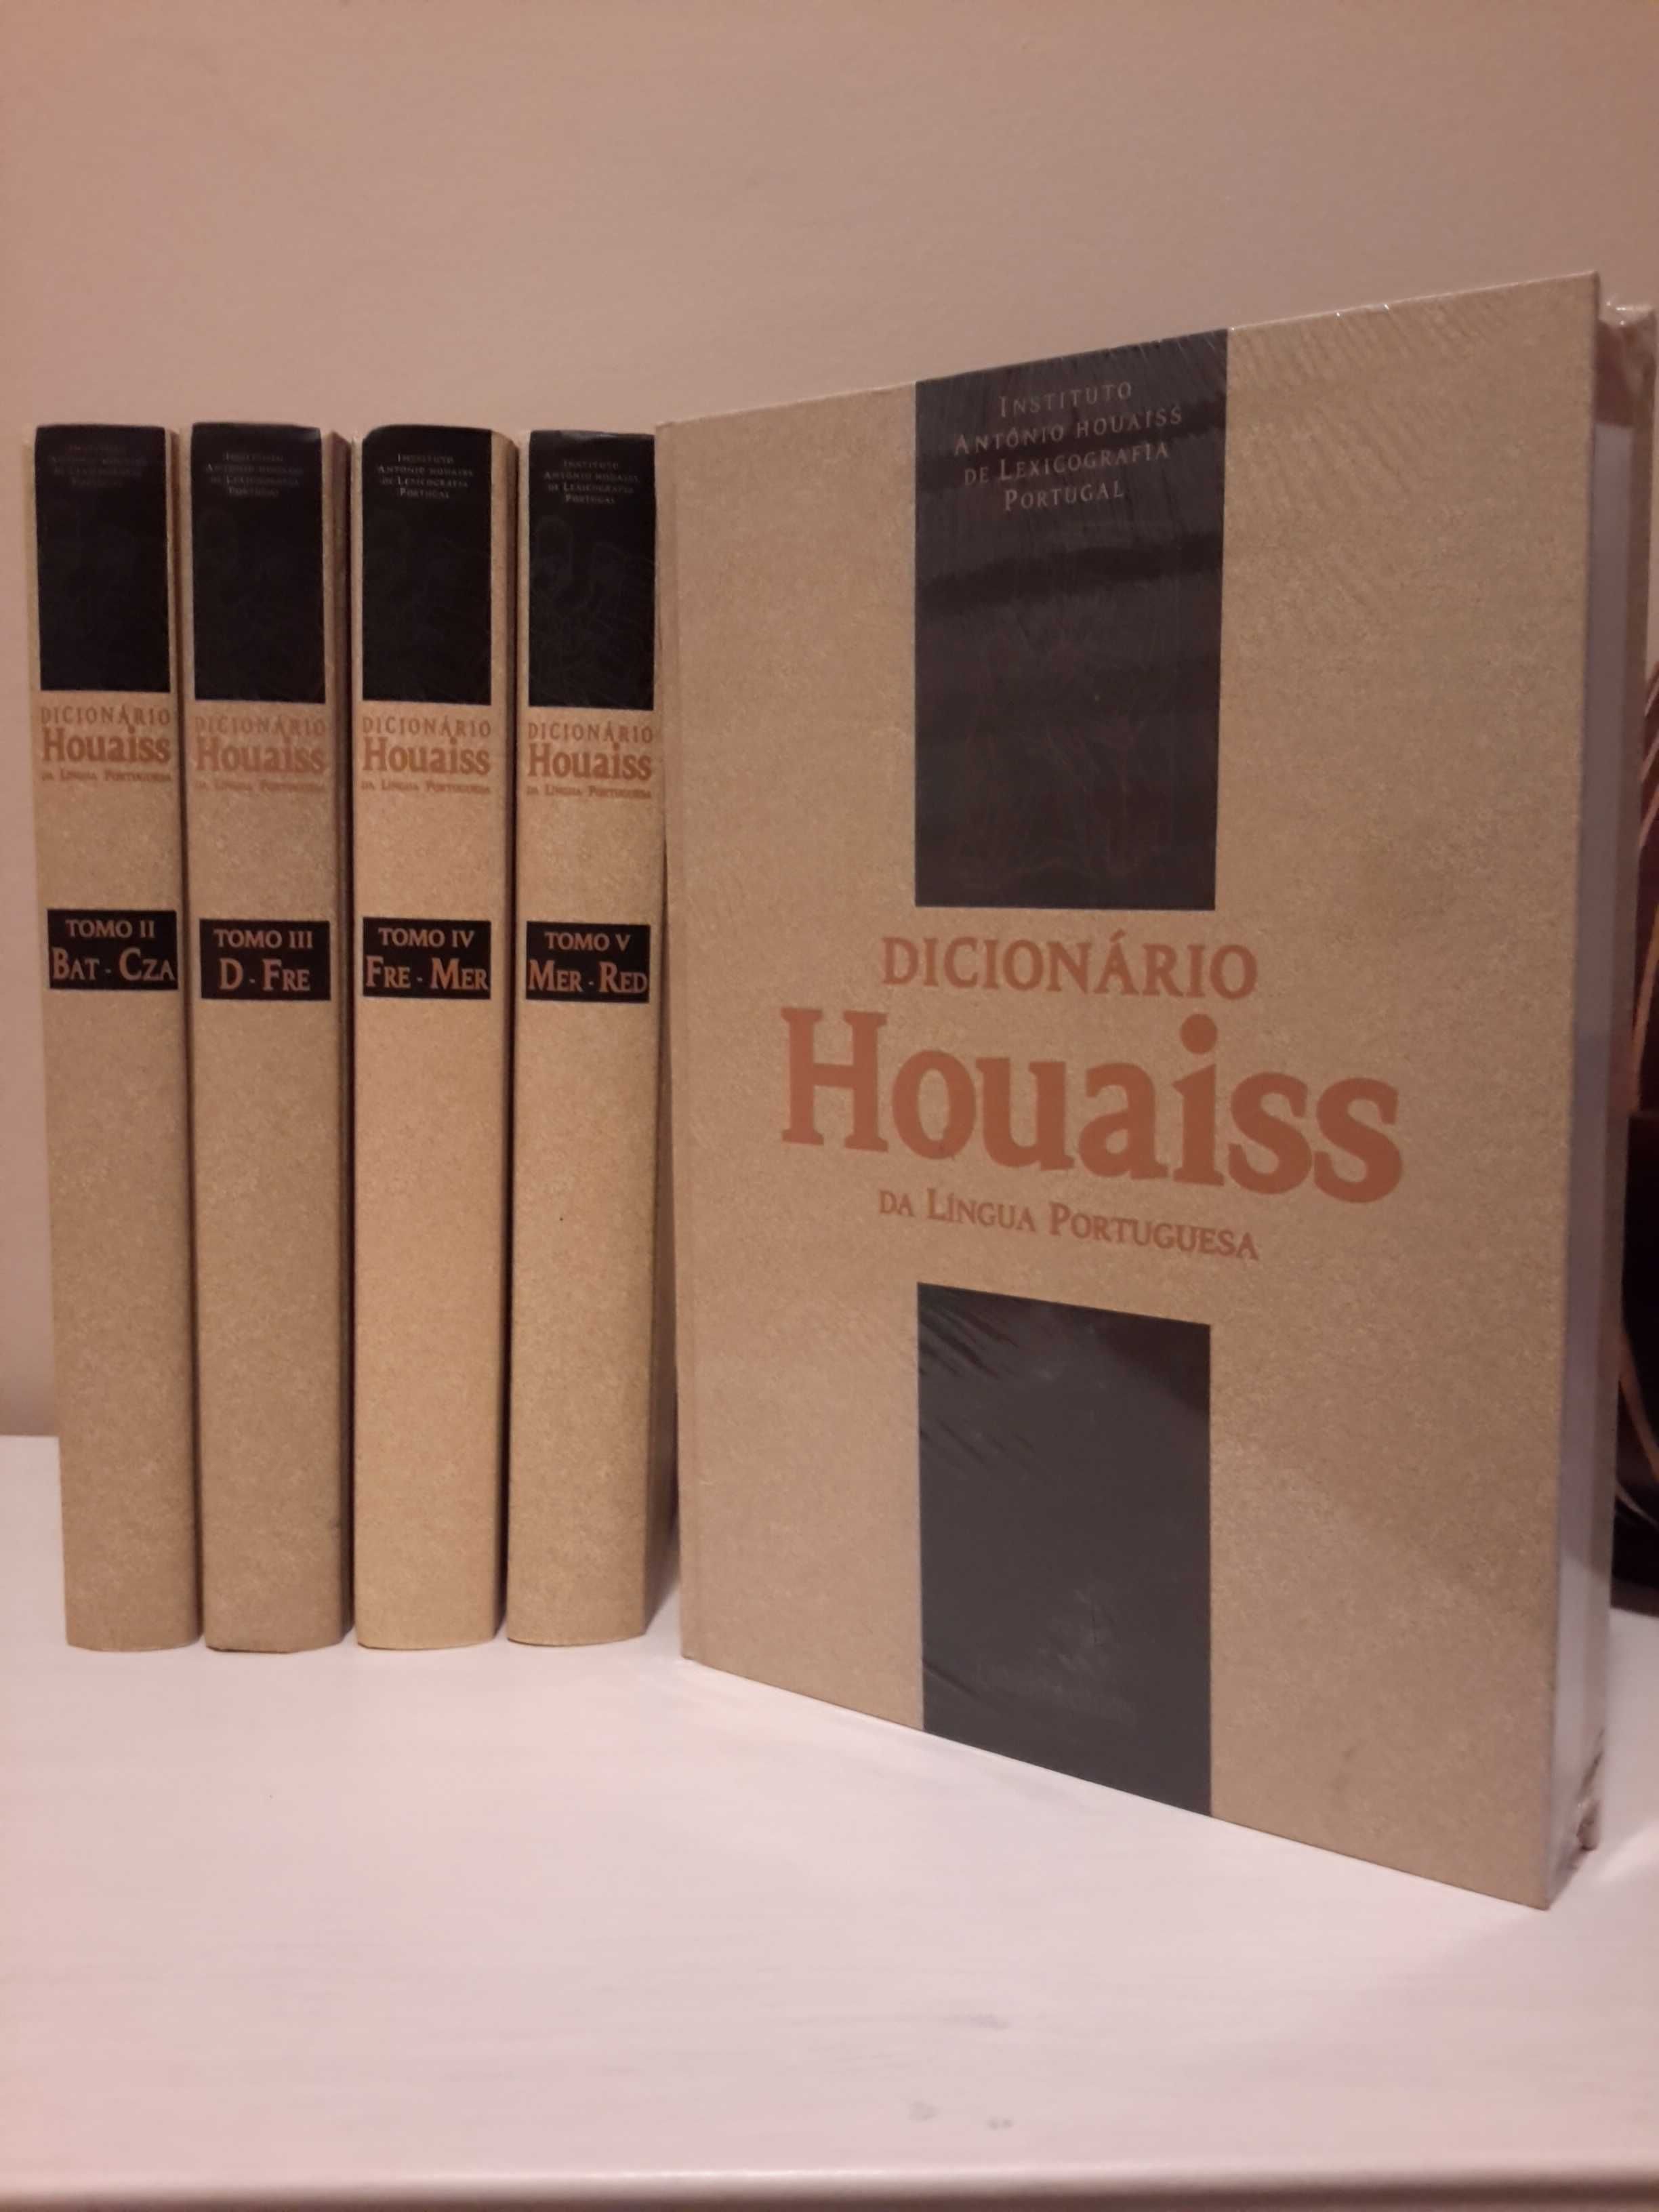 Dicionário Houaiss da Língua Portuguesa (tomos III, IV)